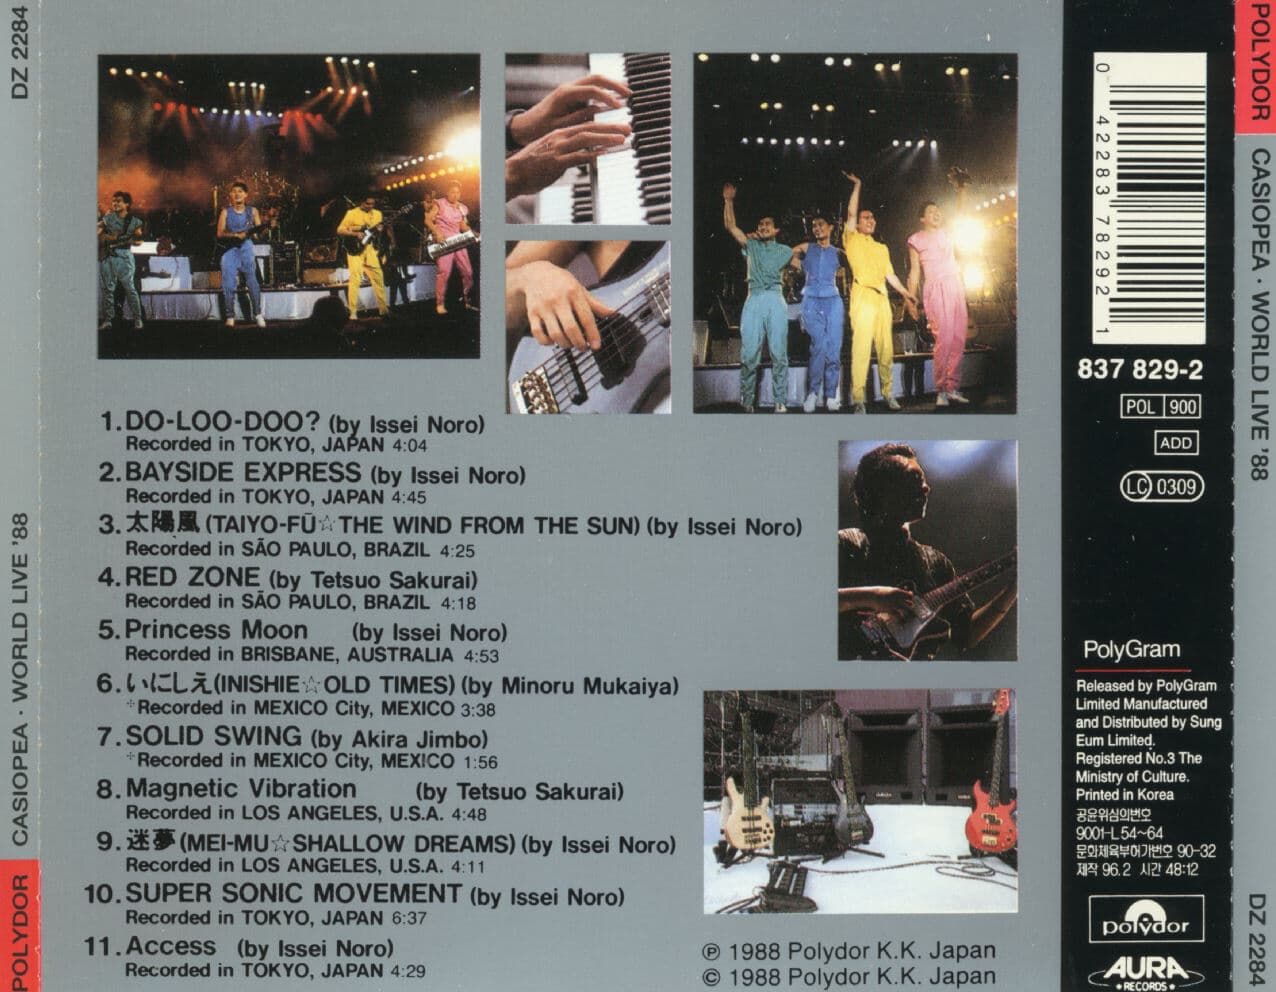 카시오페아 - Casiopea - World Live 1988